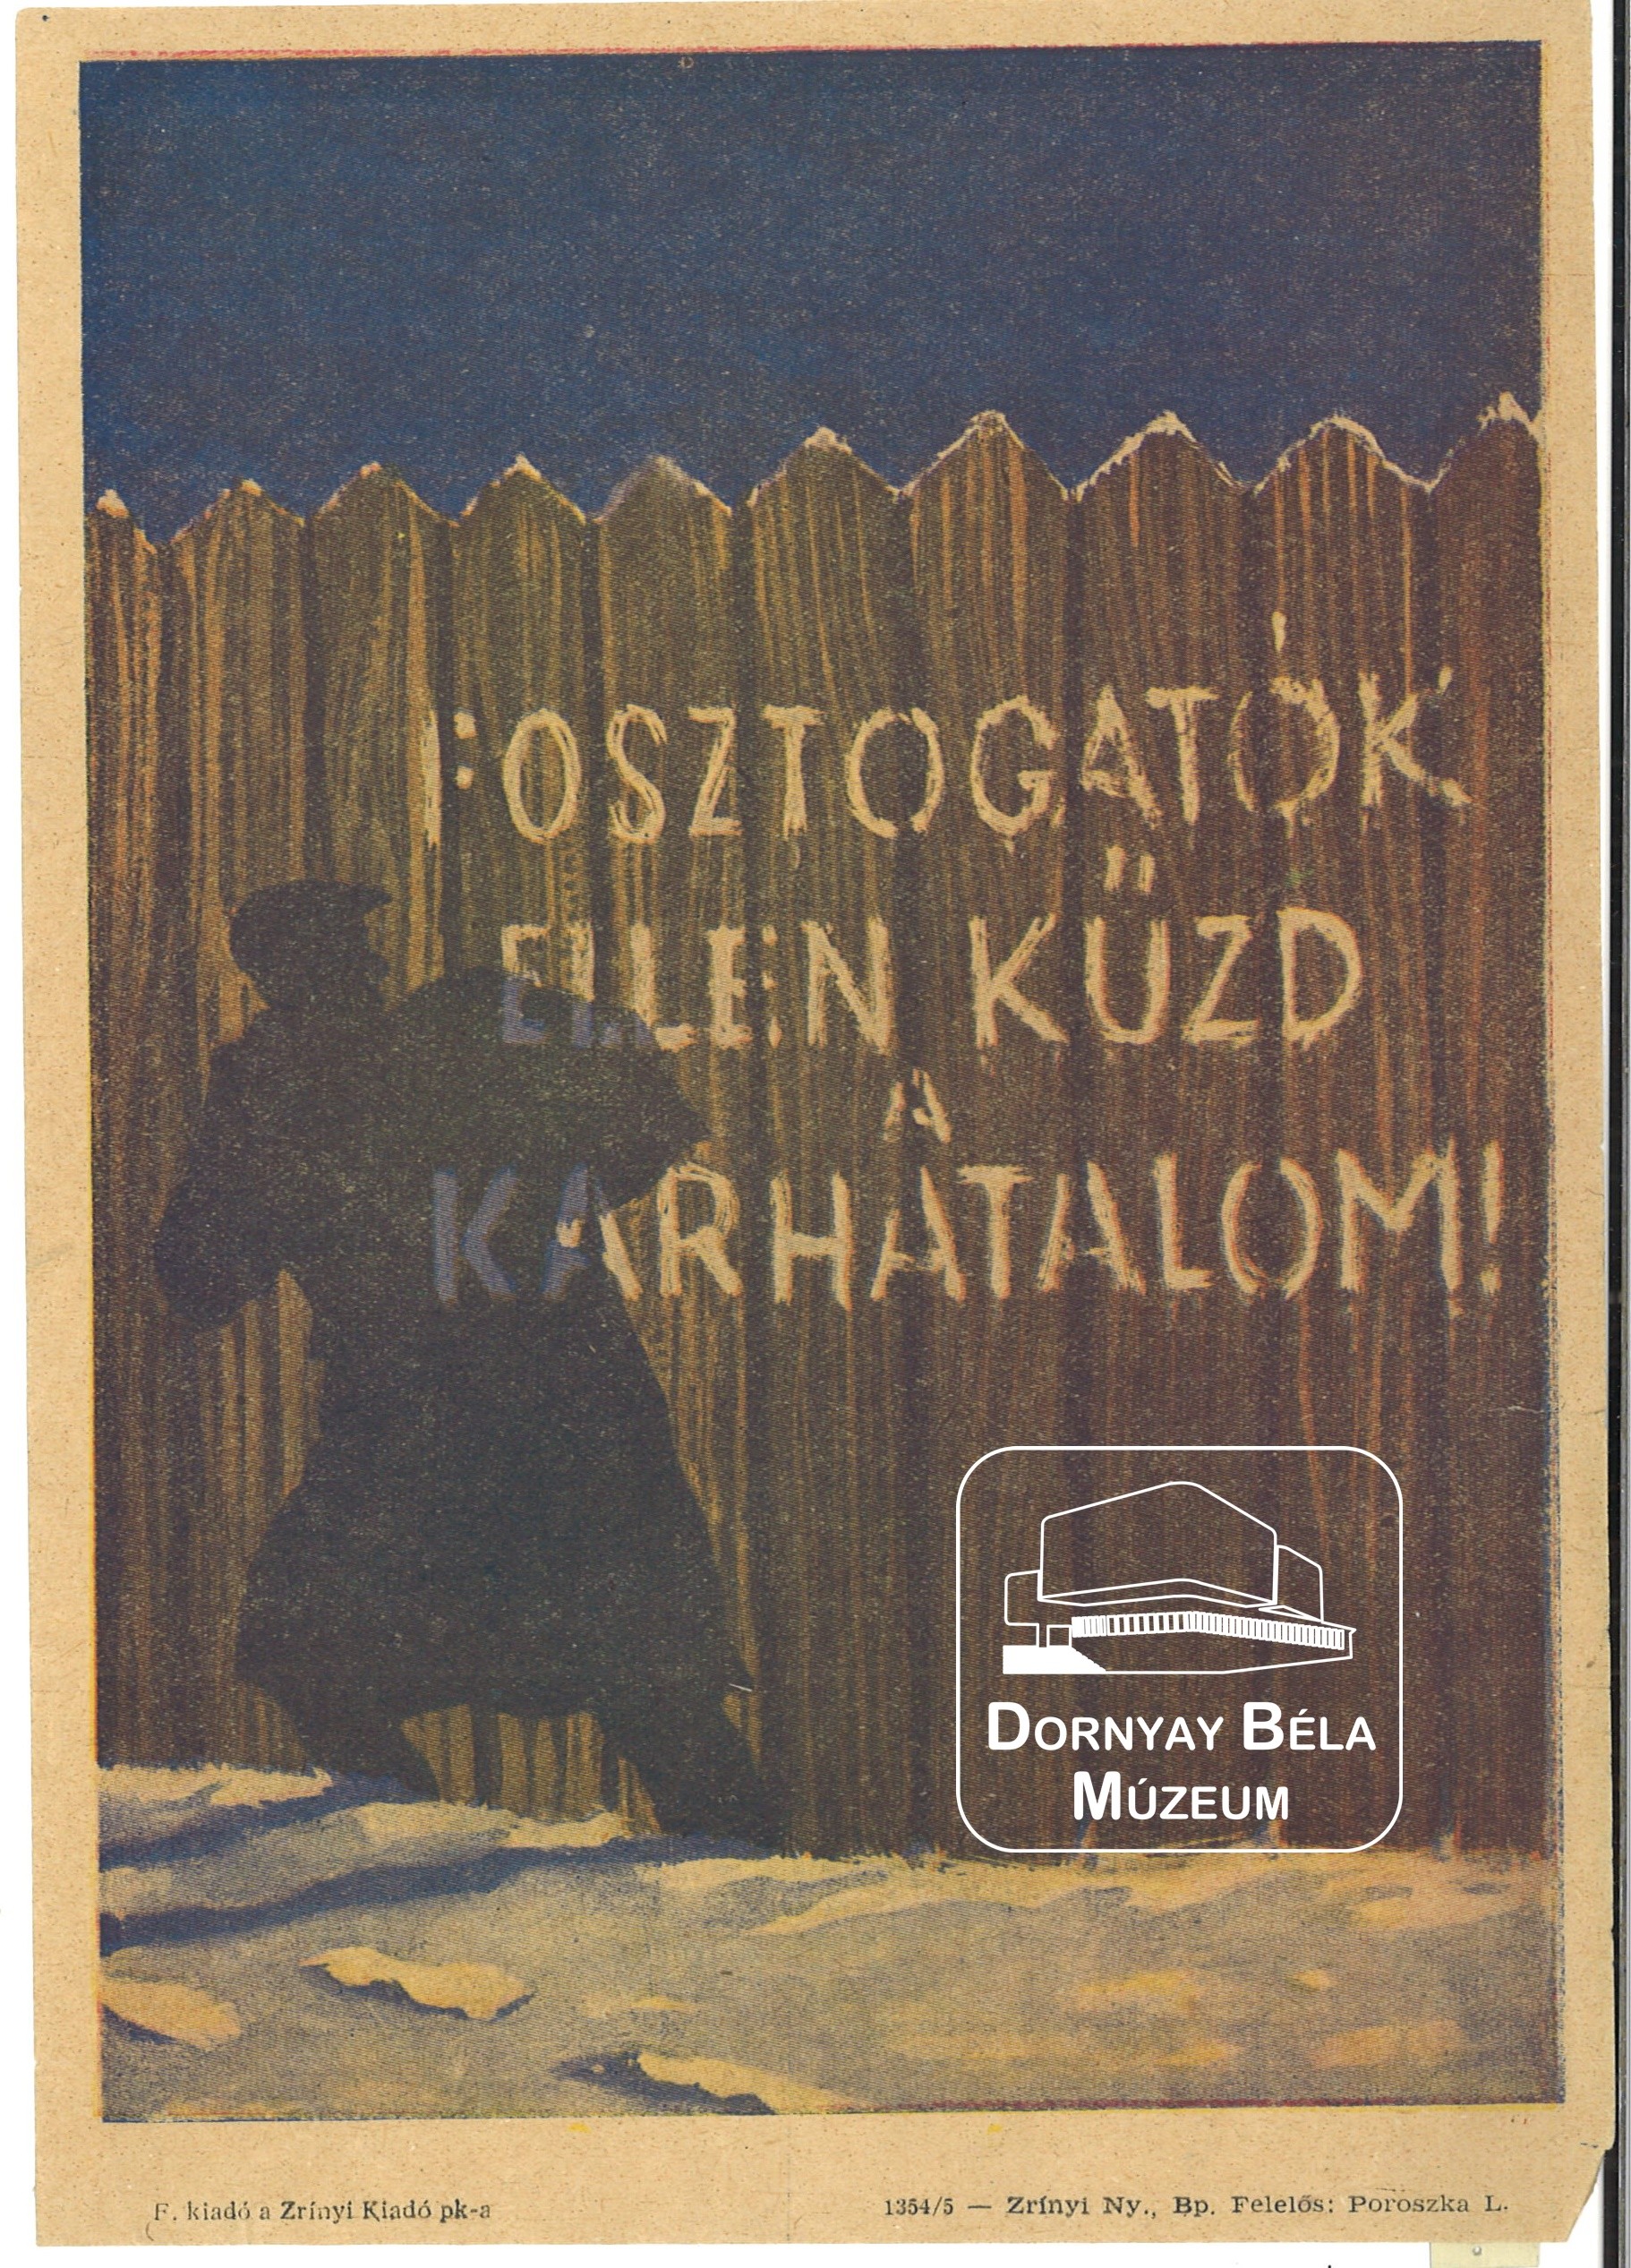 MSZMP Fosztogatók ellen küzd a karhatalom (Dornyay Béla Múzeum, Salgótarján CC BY-NC-SA)